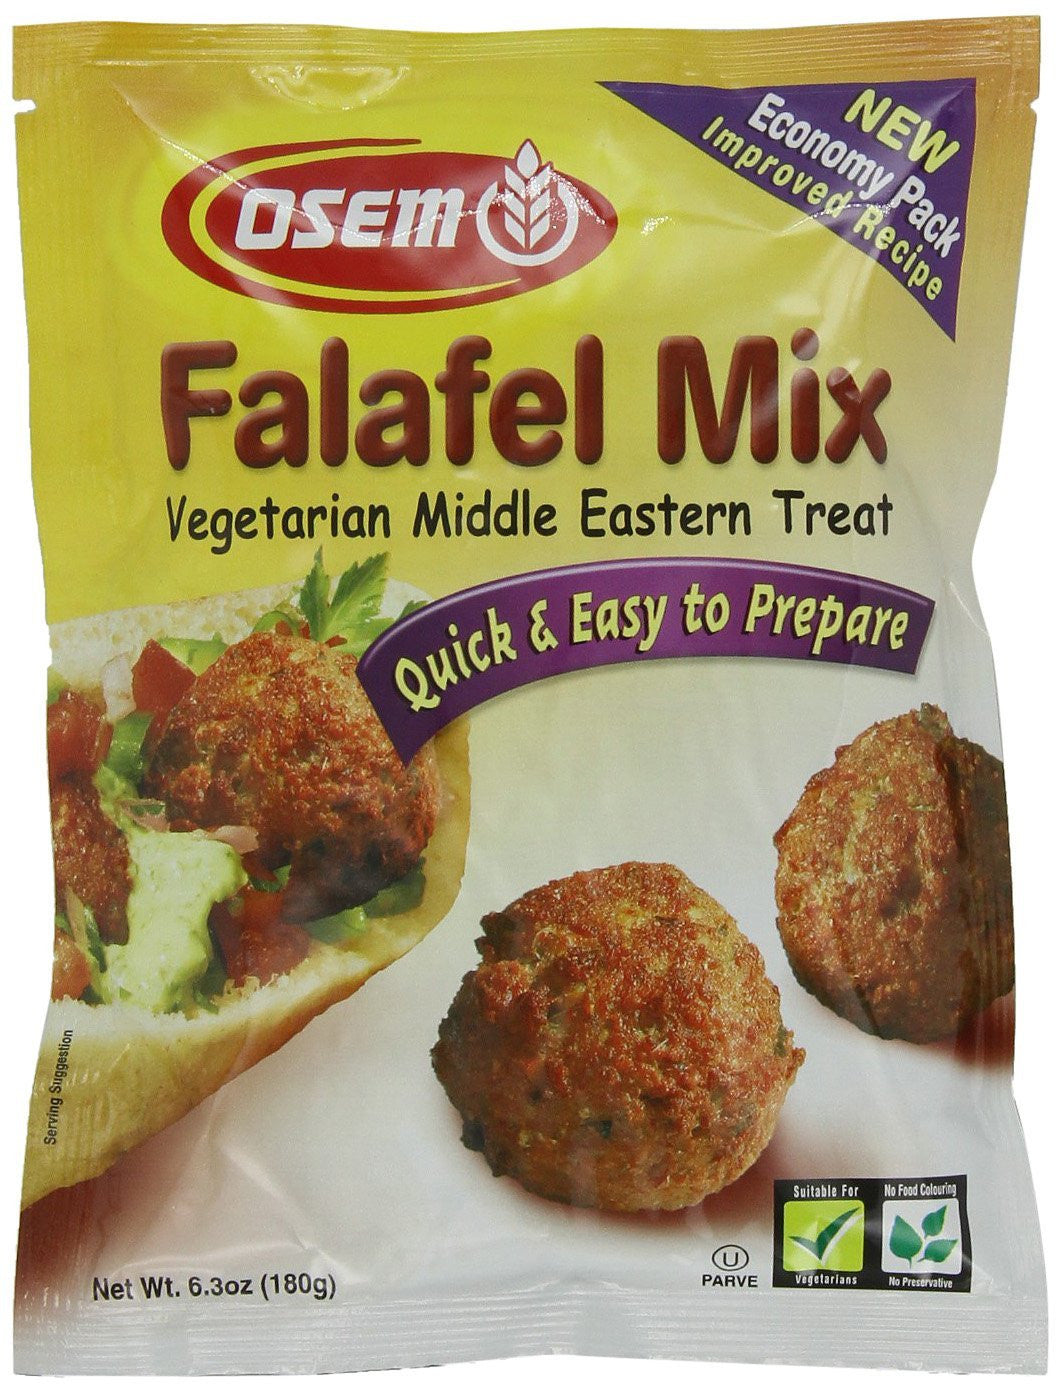 Osem Falafel Mix